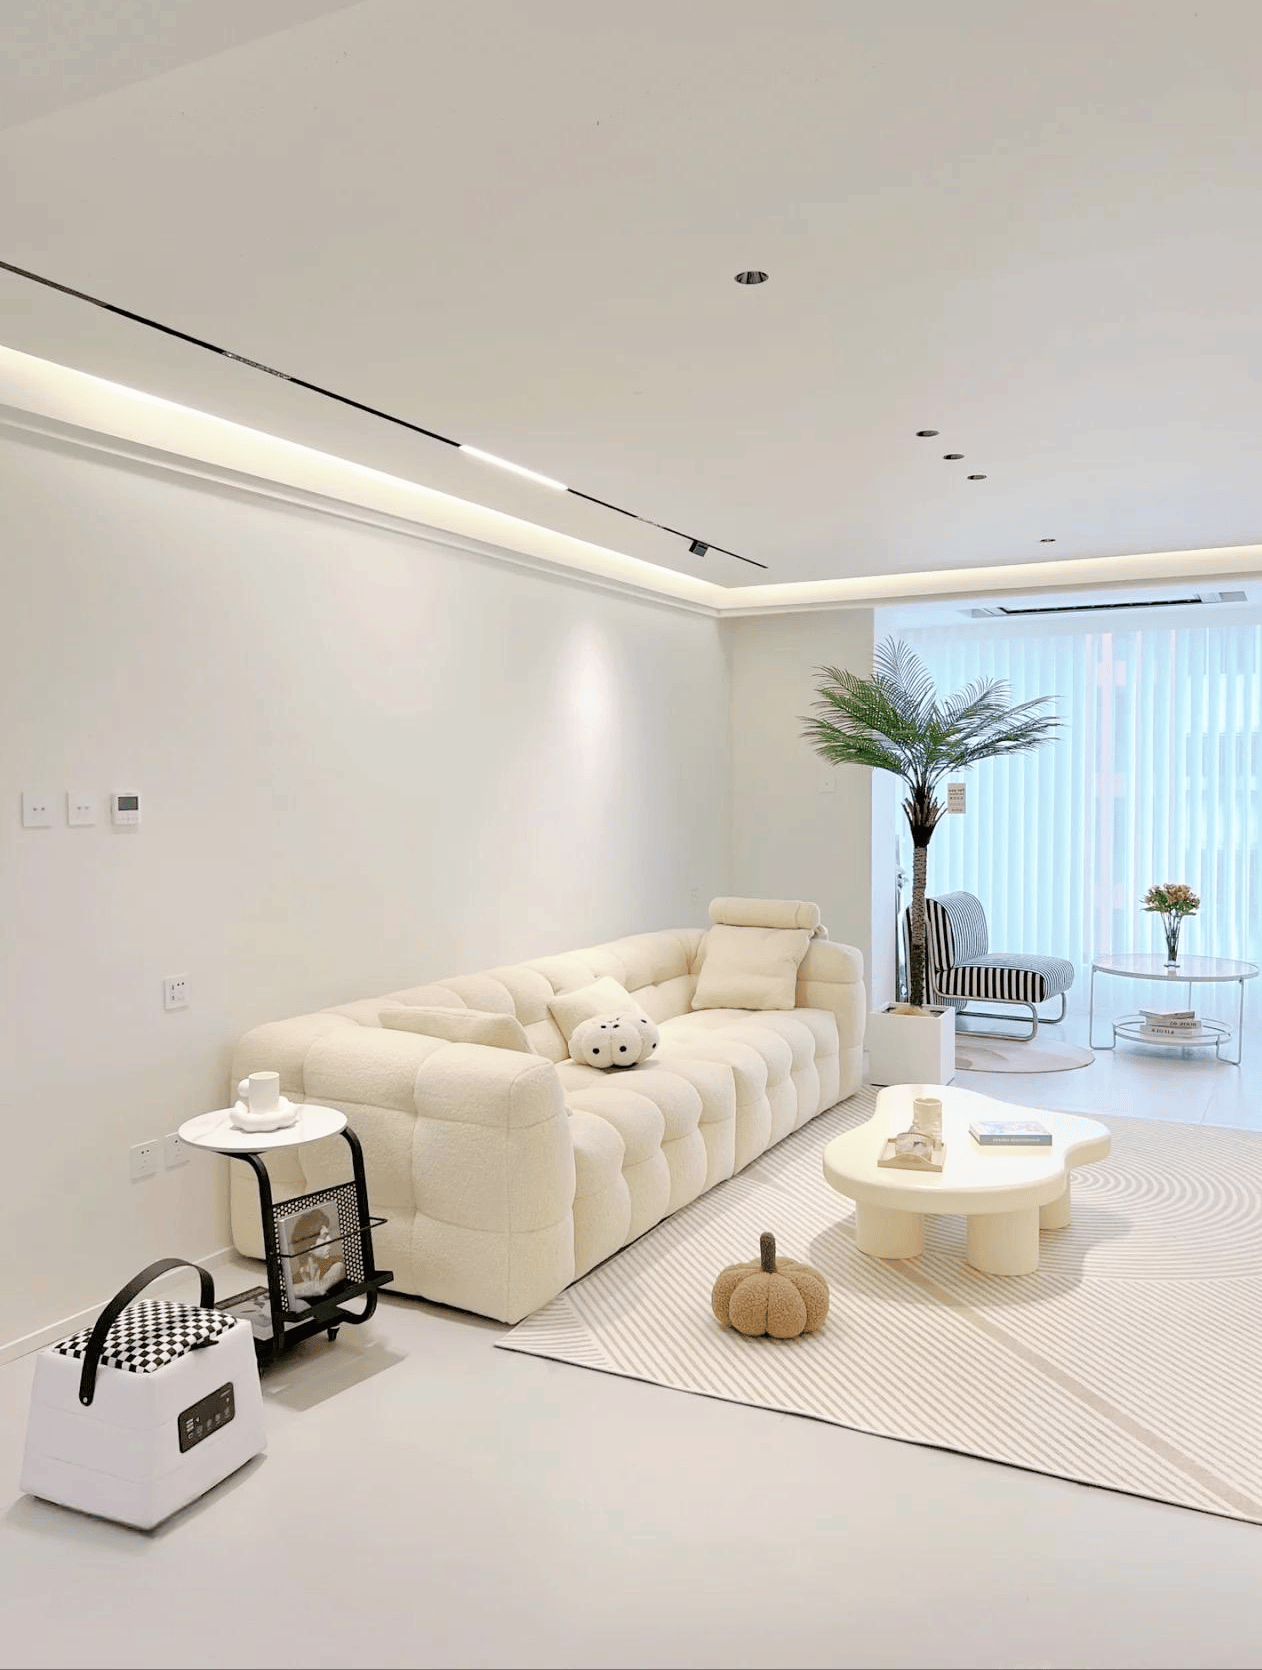 沙发墙刷为大白墙,简洁大方,搭配白色棉花糖沙发和白色云朵茶几,增加